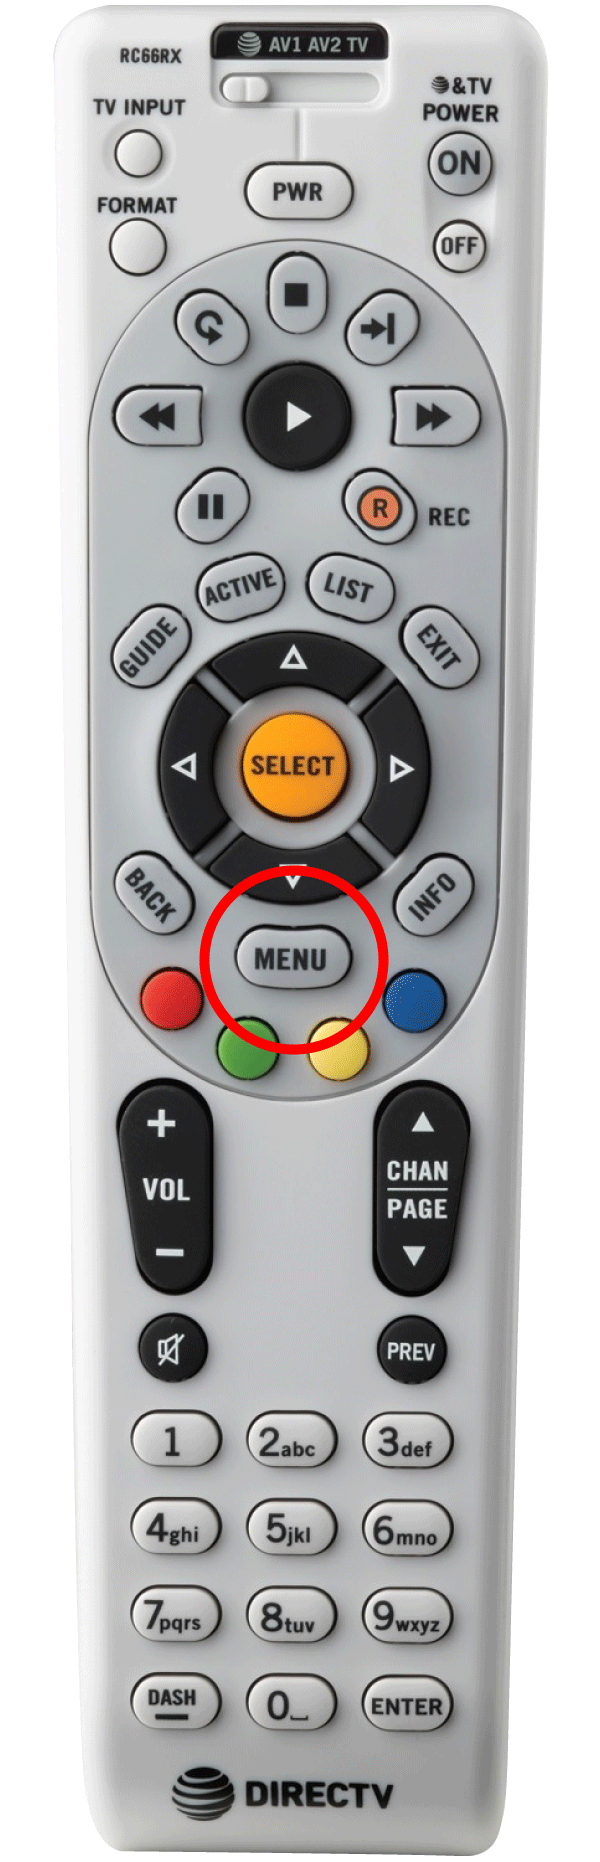 Control remoto de televisión